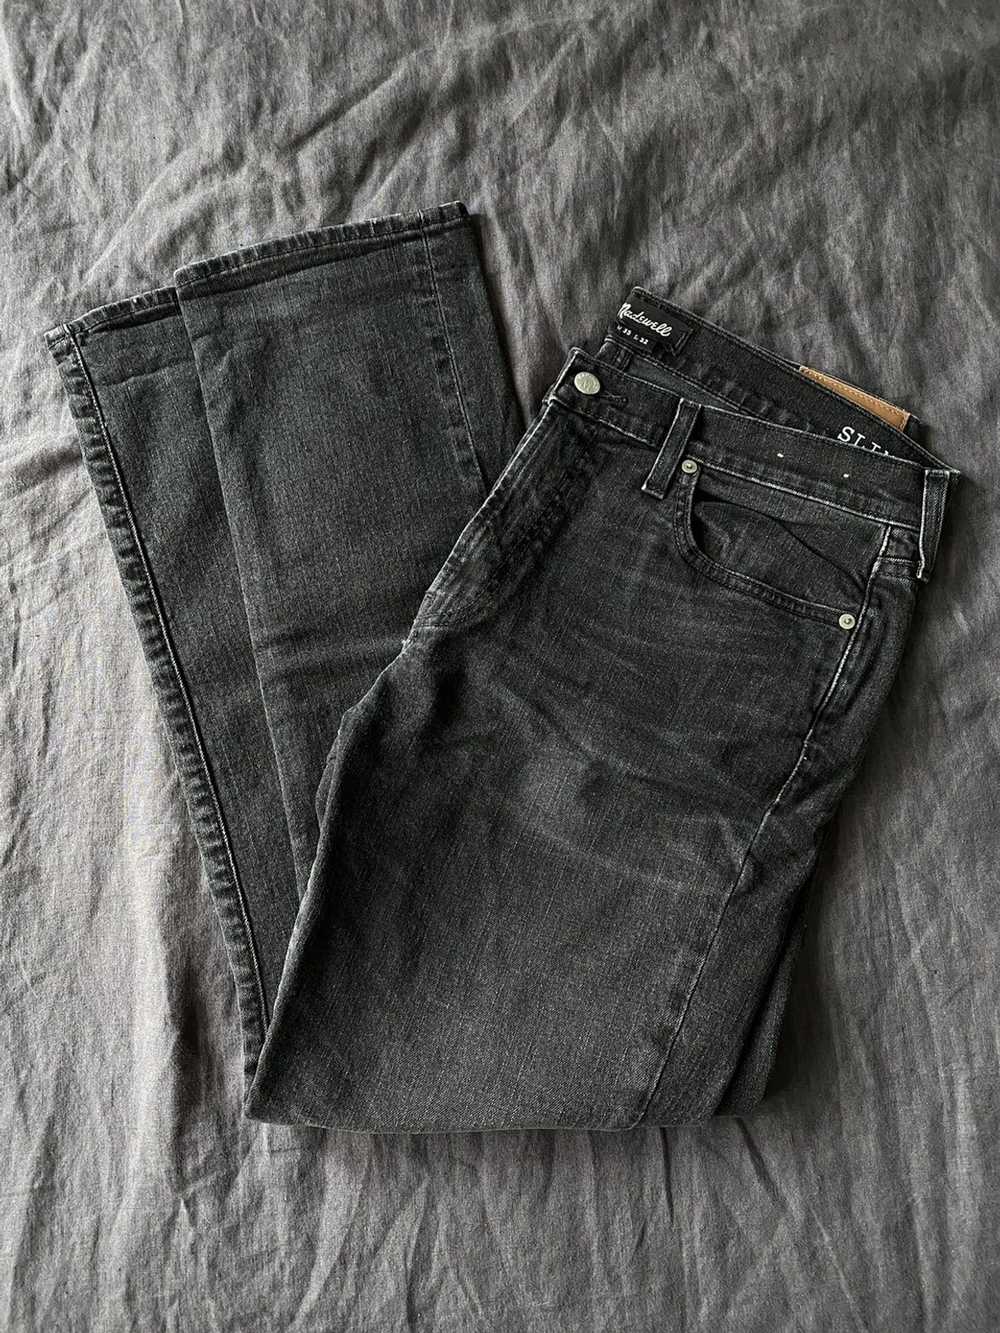 Madewell Black Slim Jeans - 35x32 - image 1